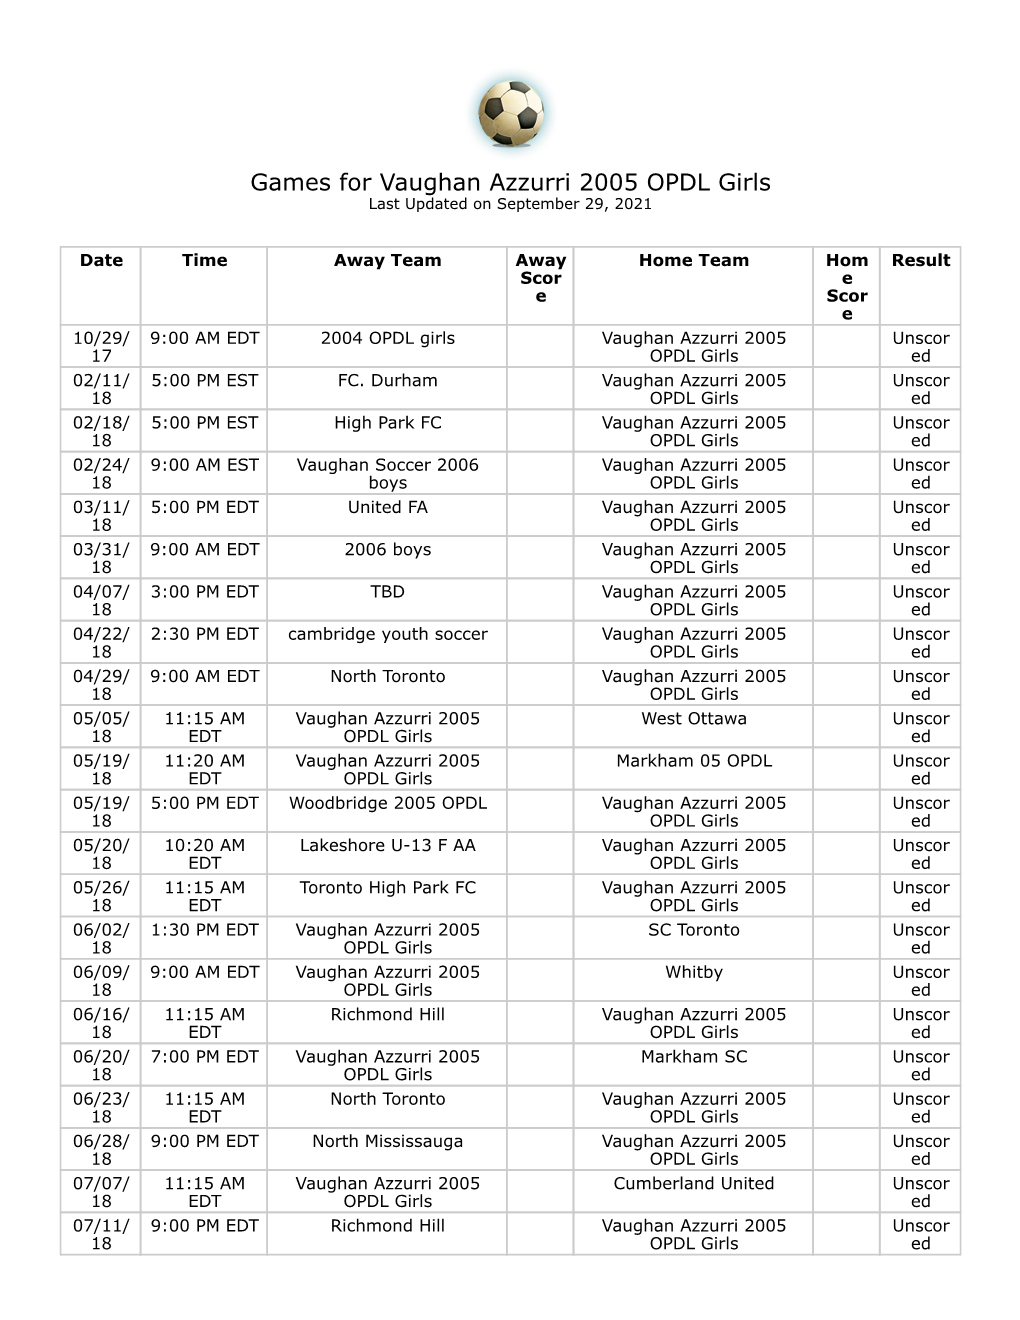 Games for Vaughan Azzurri 2005 OPDL Girls Last Updated on September 29, 2021